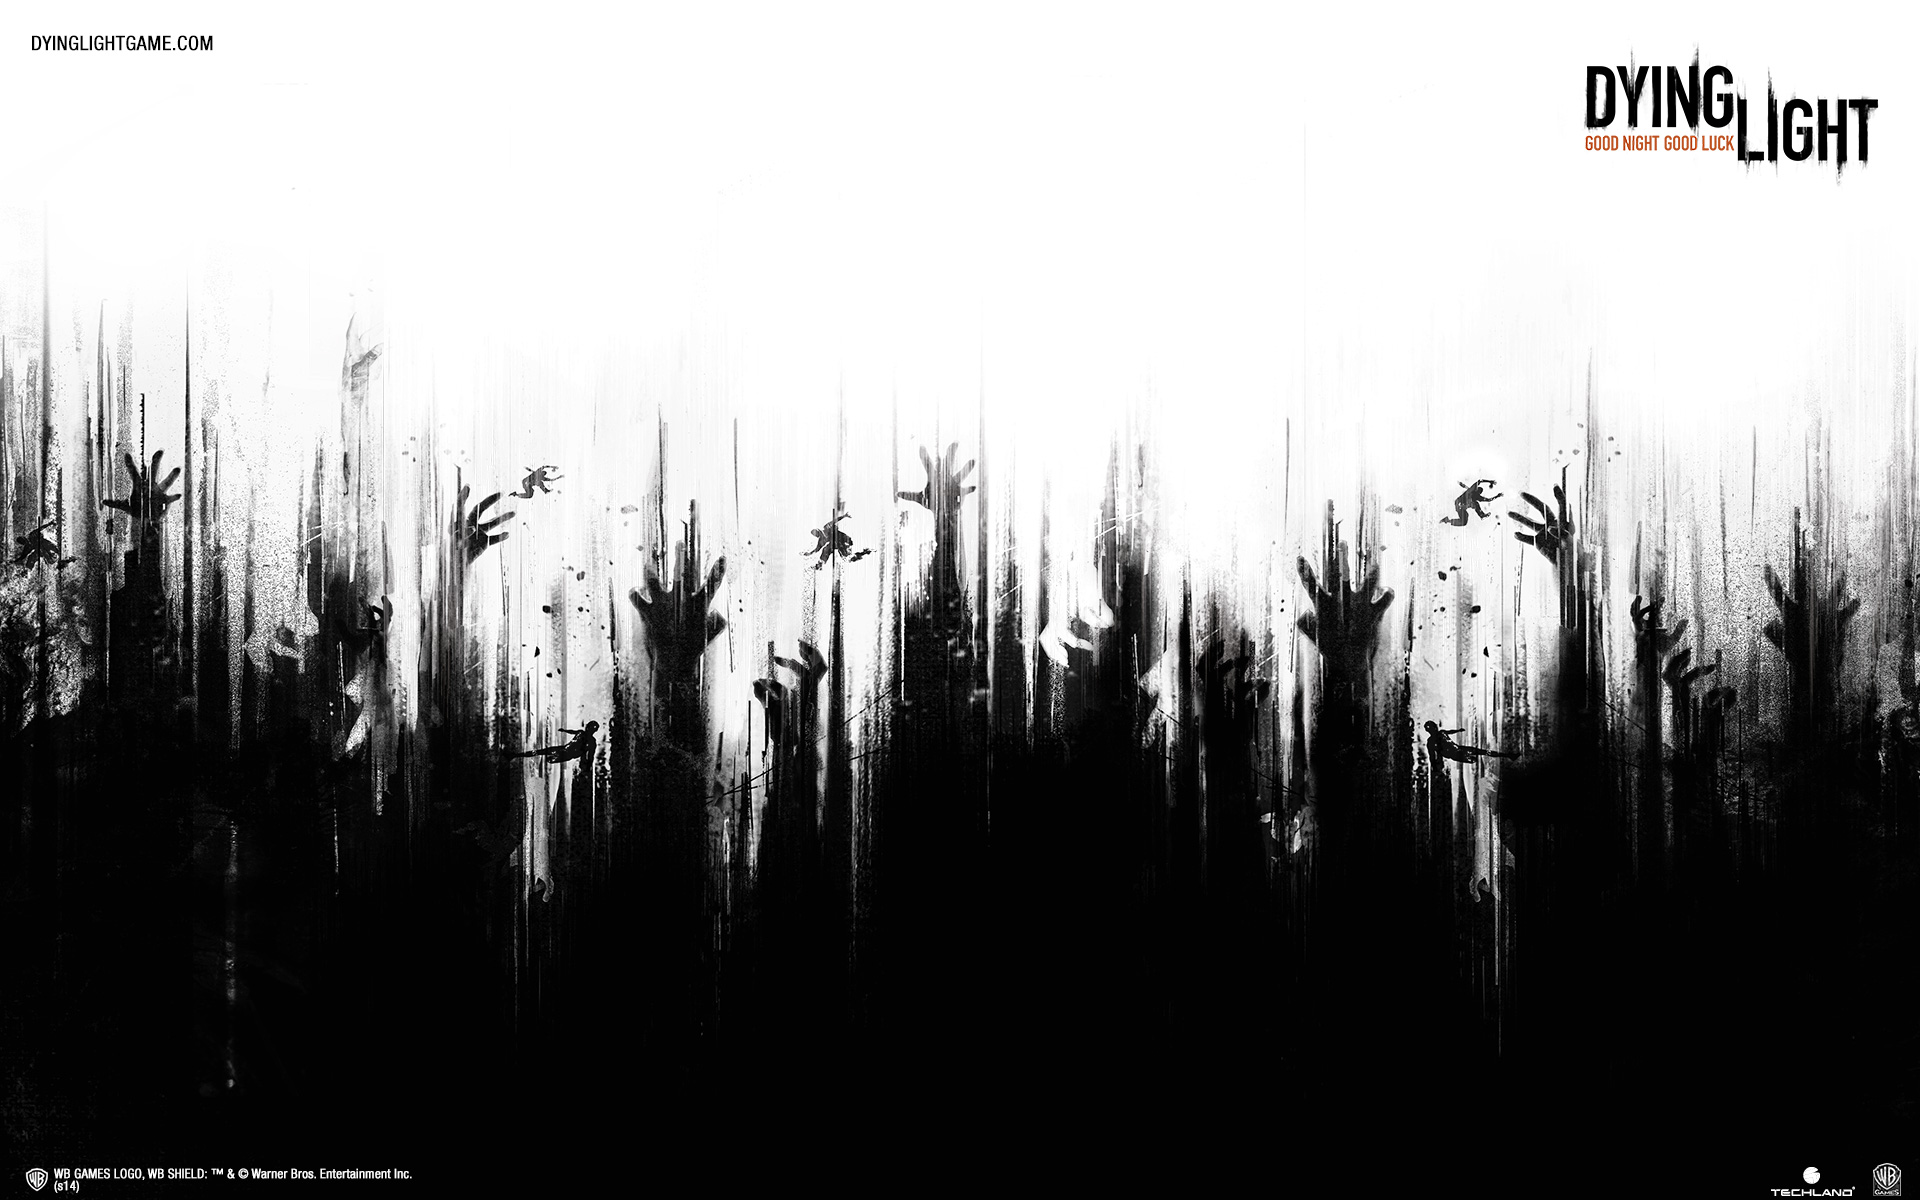 papel tapiz de luz moribunda,en blanco y negro,texto,fotografía monocroma,árbol,familia de la hierba